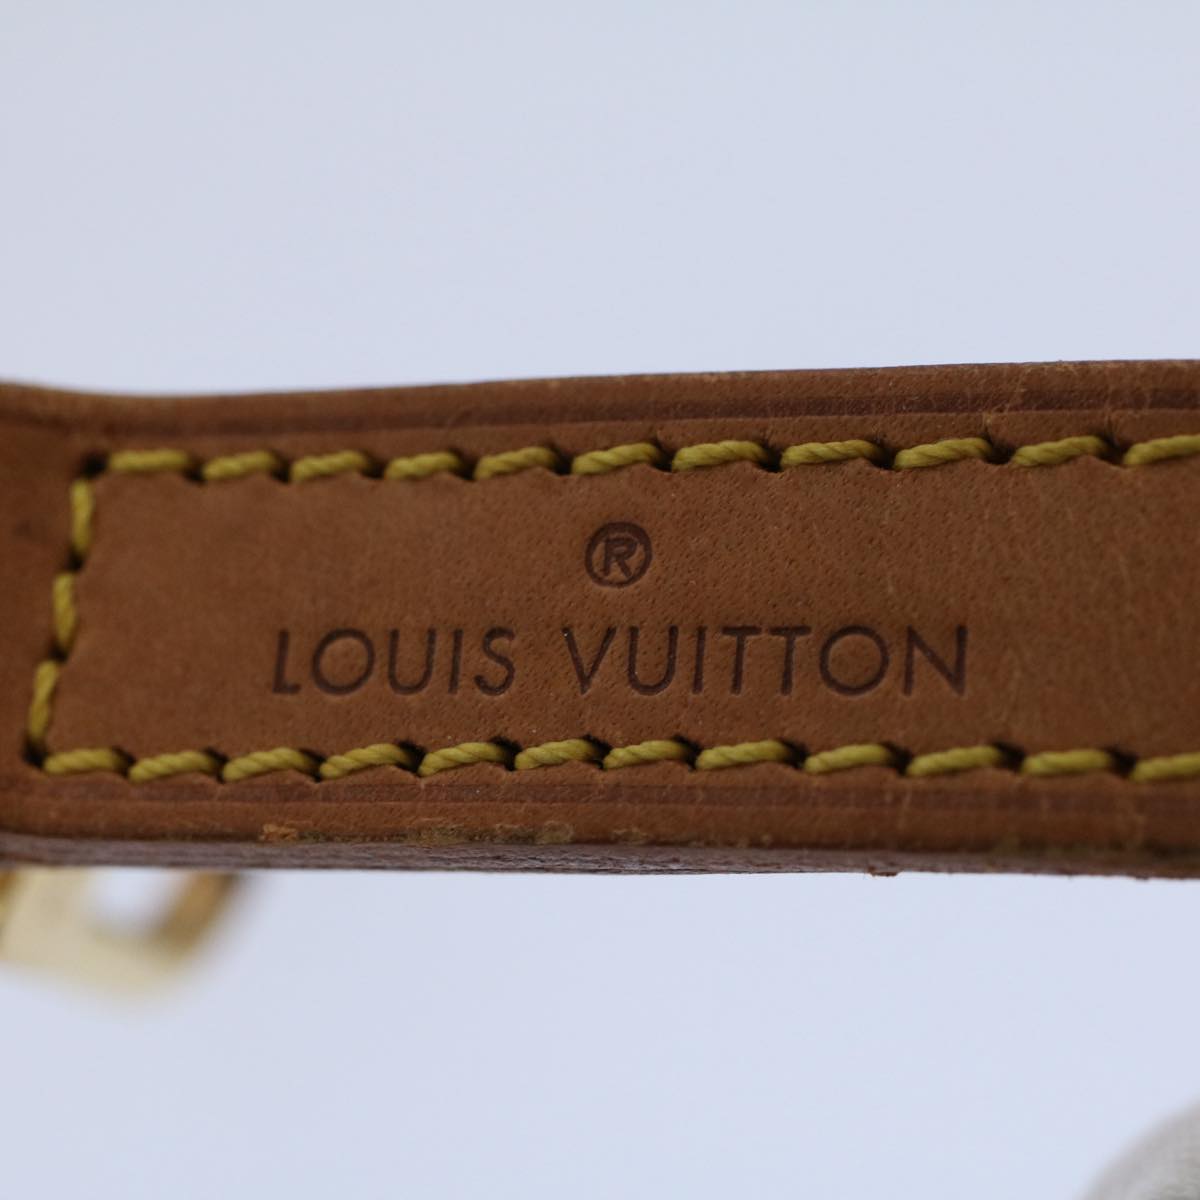 LOUIS VUITTON Shoulder Strap Leather 35.8"" Beige LV Auth 57806